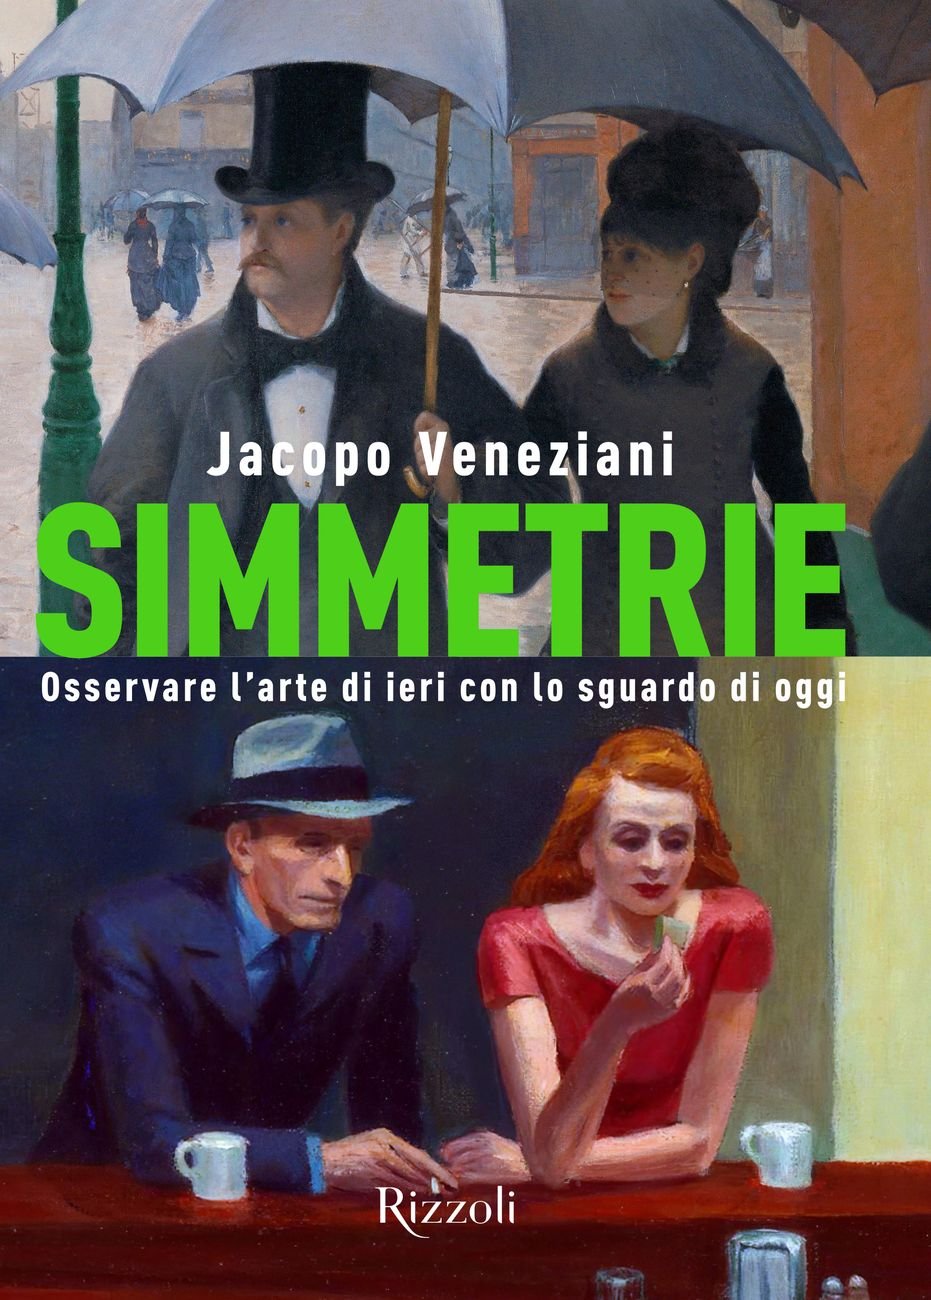 Jacopo Veneziani – Simmetrie. Osservare l'arte di ieri con lo sguardo di oggi (Rizzoli, Milano 2021)